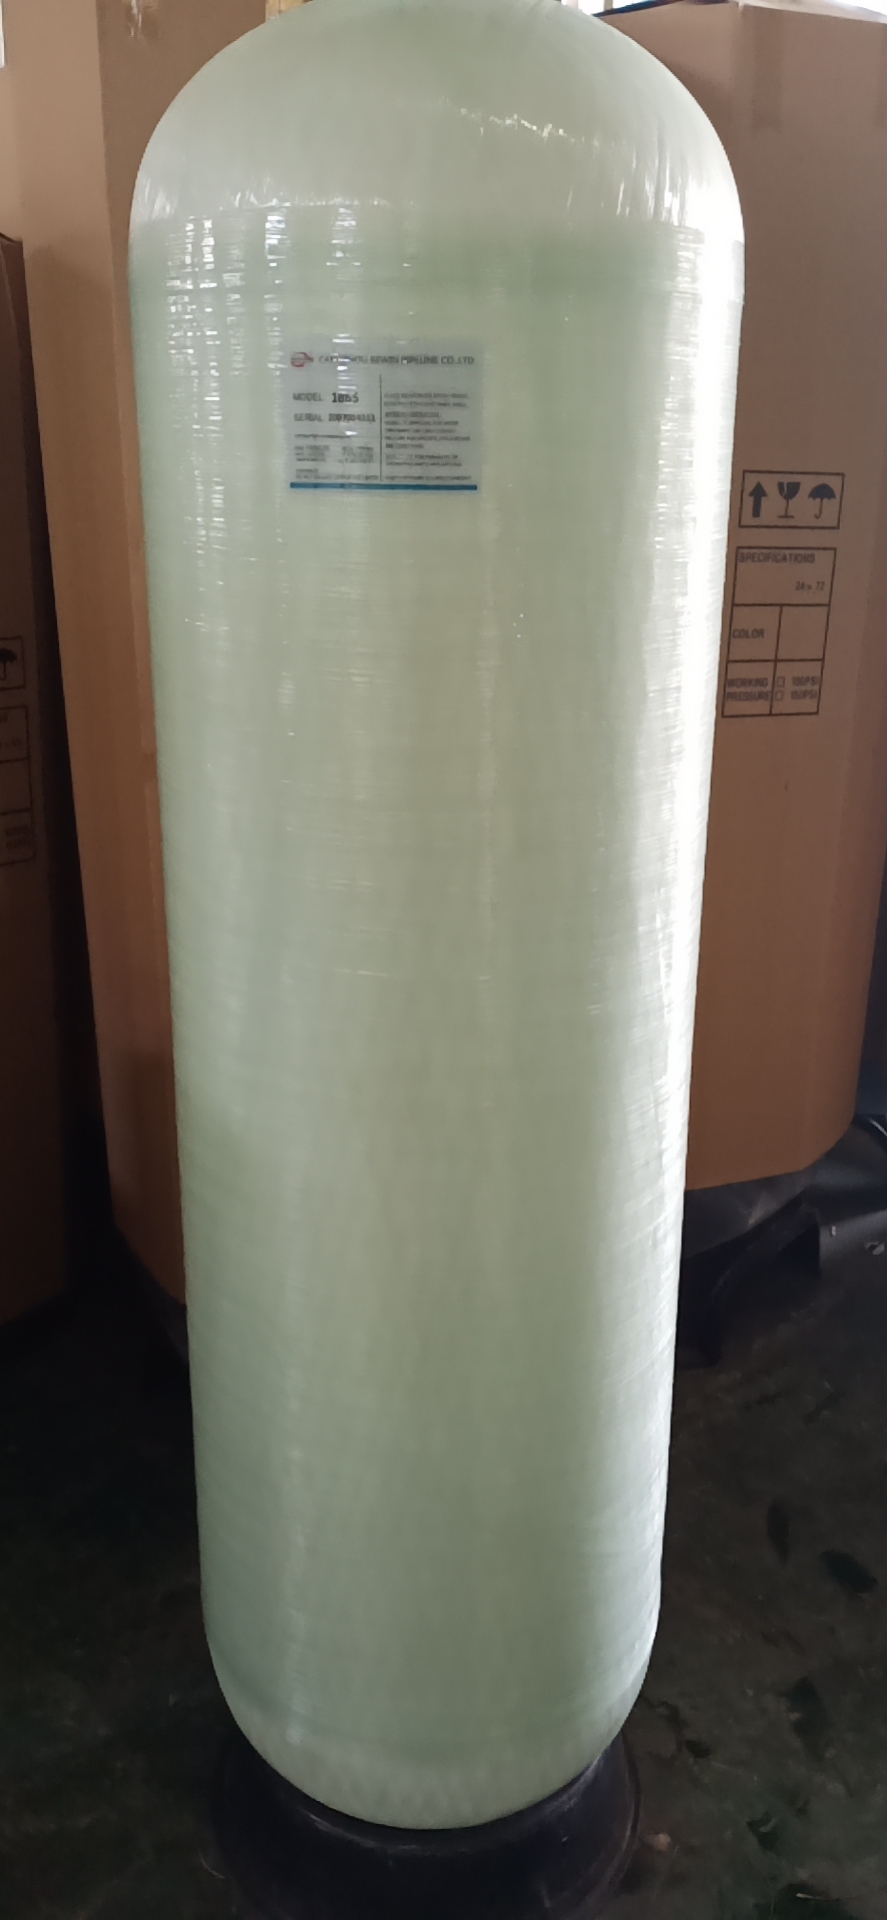 FRP Plastic fiberglass Pressure Resin softener Tank for Waste Water filter Treatment Equipment